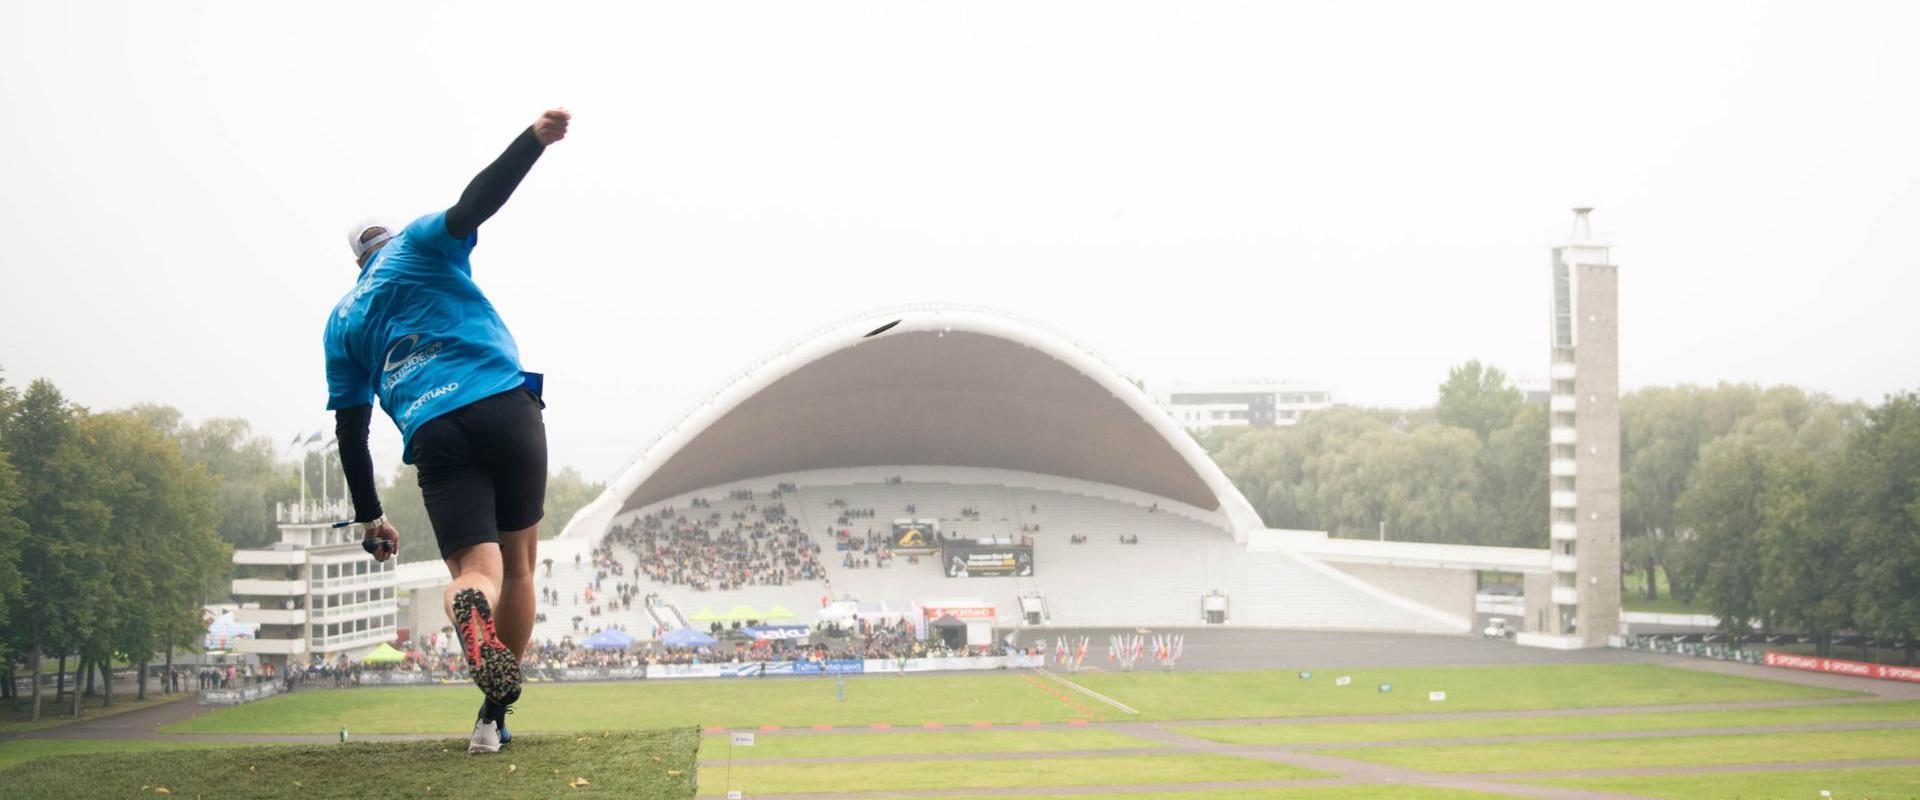 Festivaali tarjoaa ainutlaatuisen tilaisuuden nauttia huippuluokan frisbeegolfia Tallinnan ytimessä. Festivaalilla voit seurata mukaansatempaavia pele